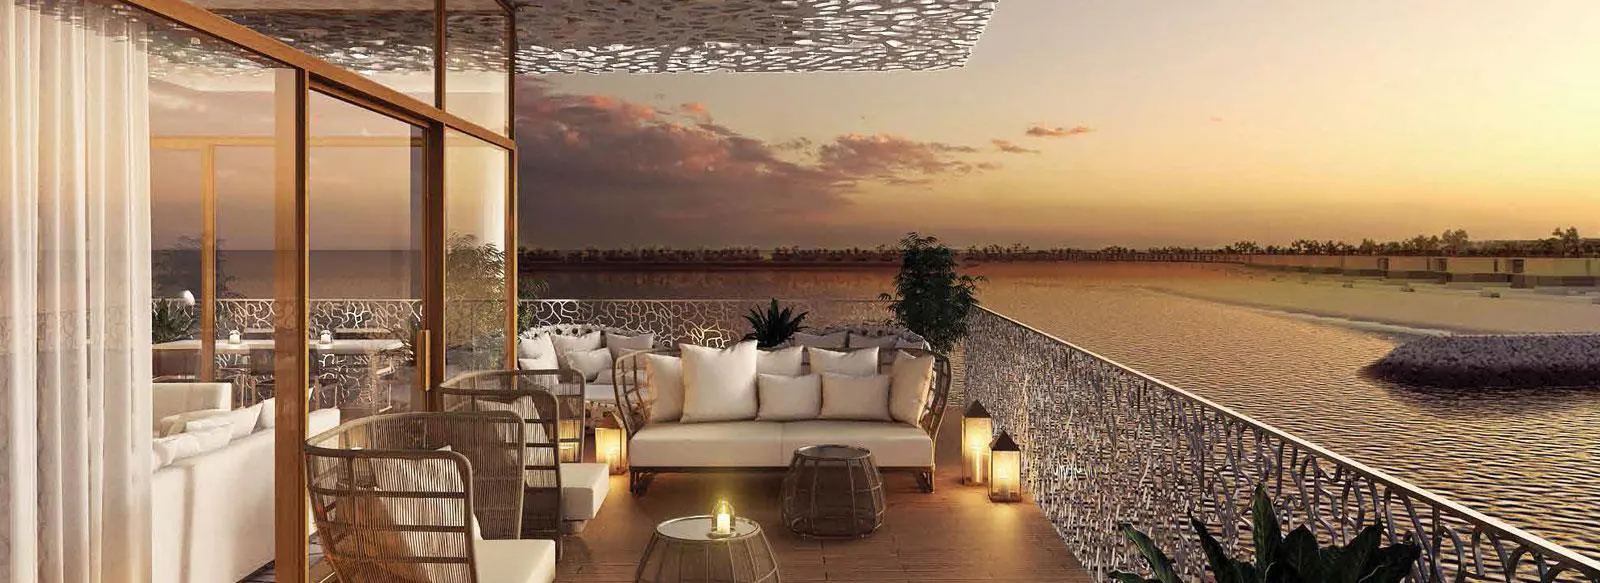 BVLGARI Mansions by Meraas at Jumeirah Bay, Dubai